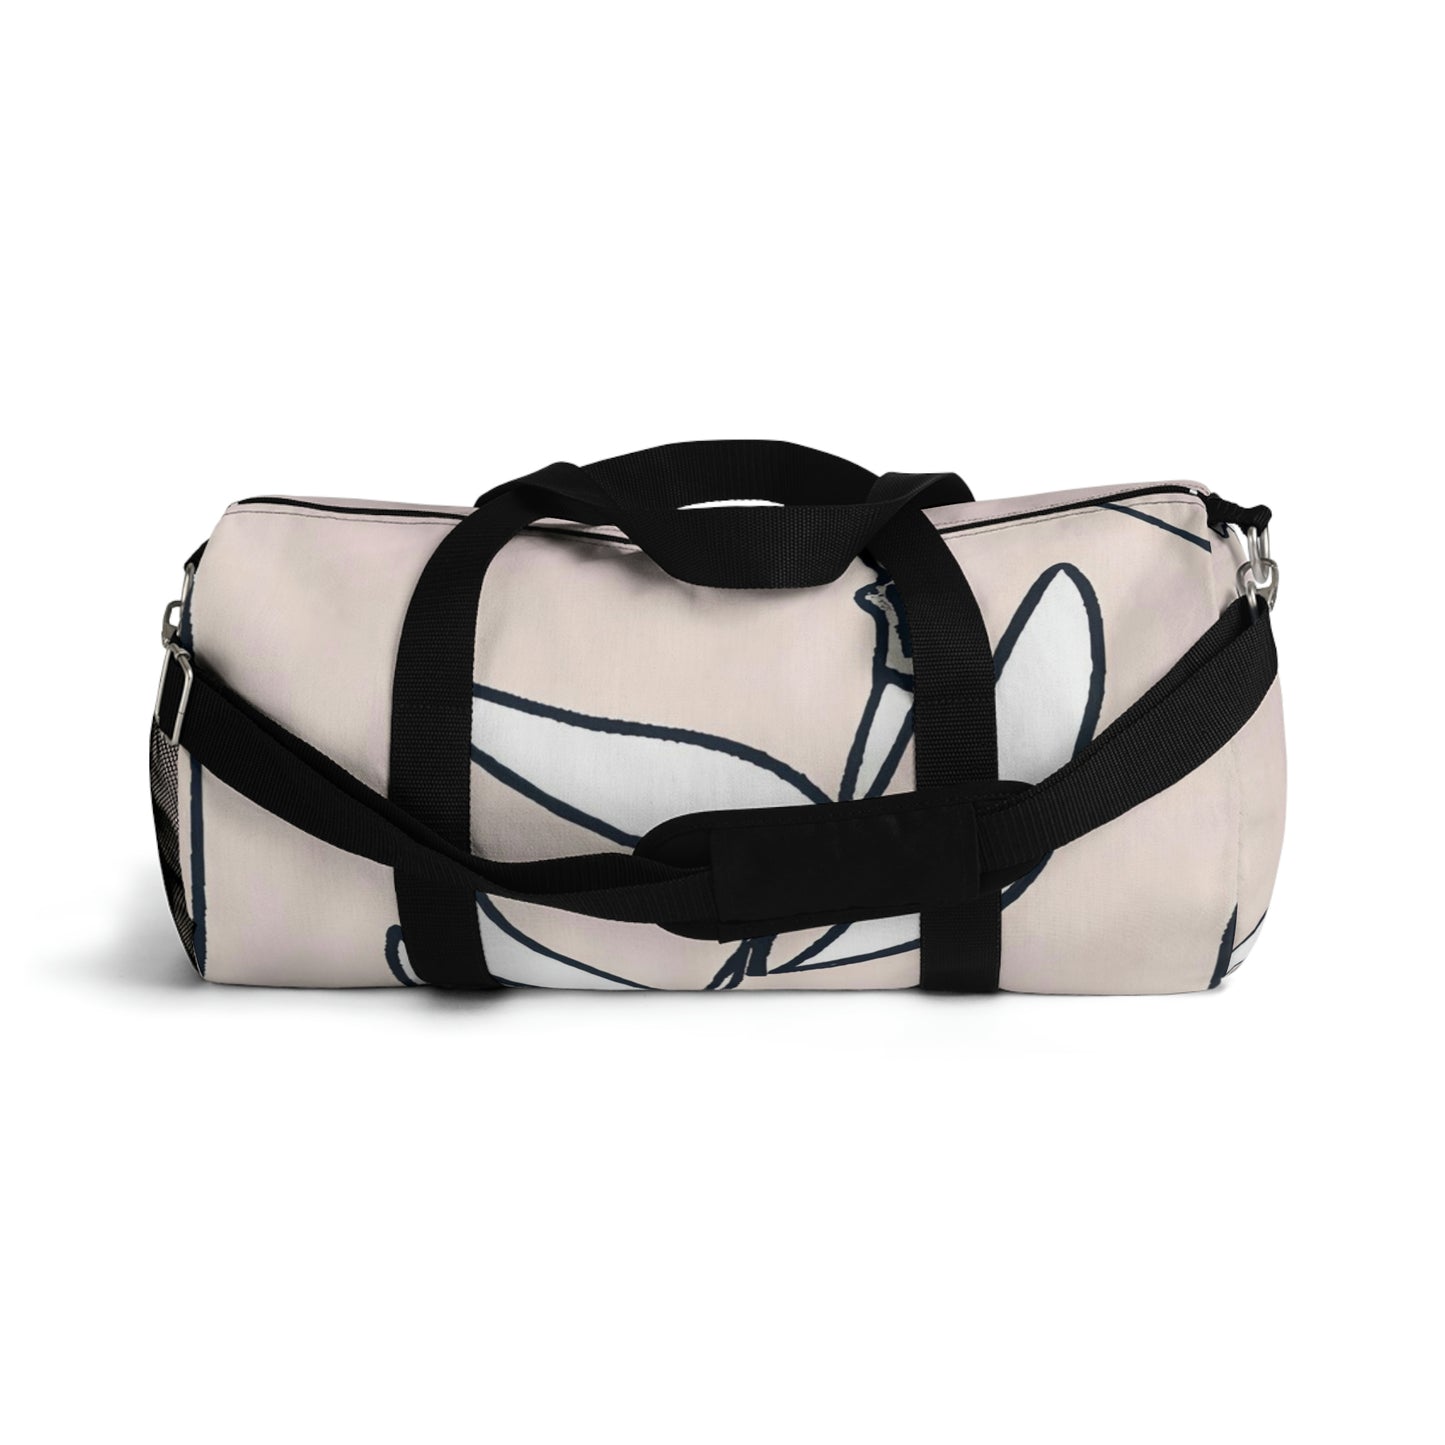 Planda Thelma - Duffel Bag